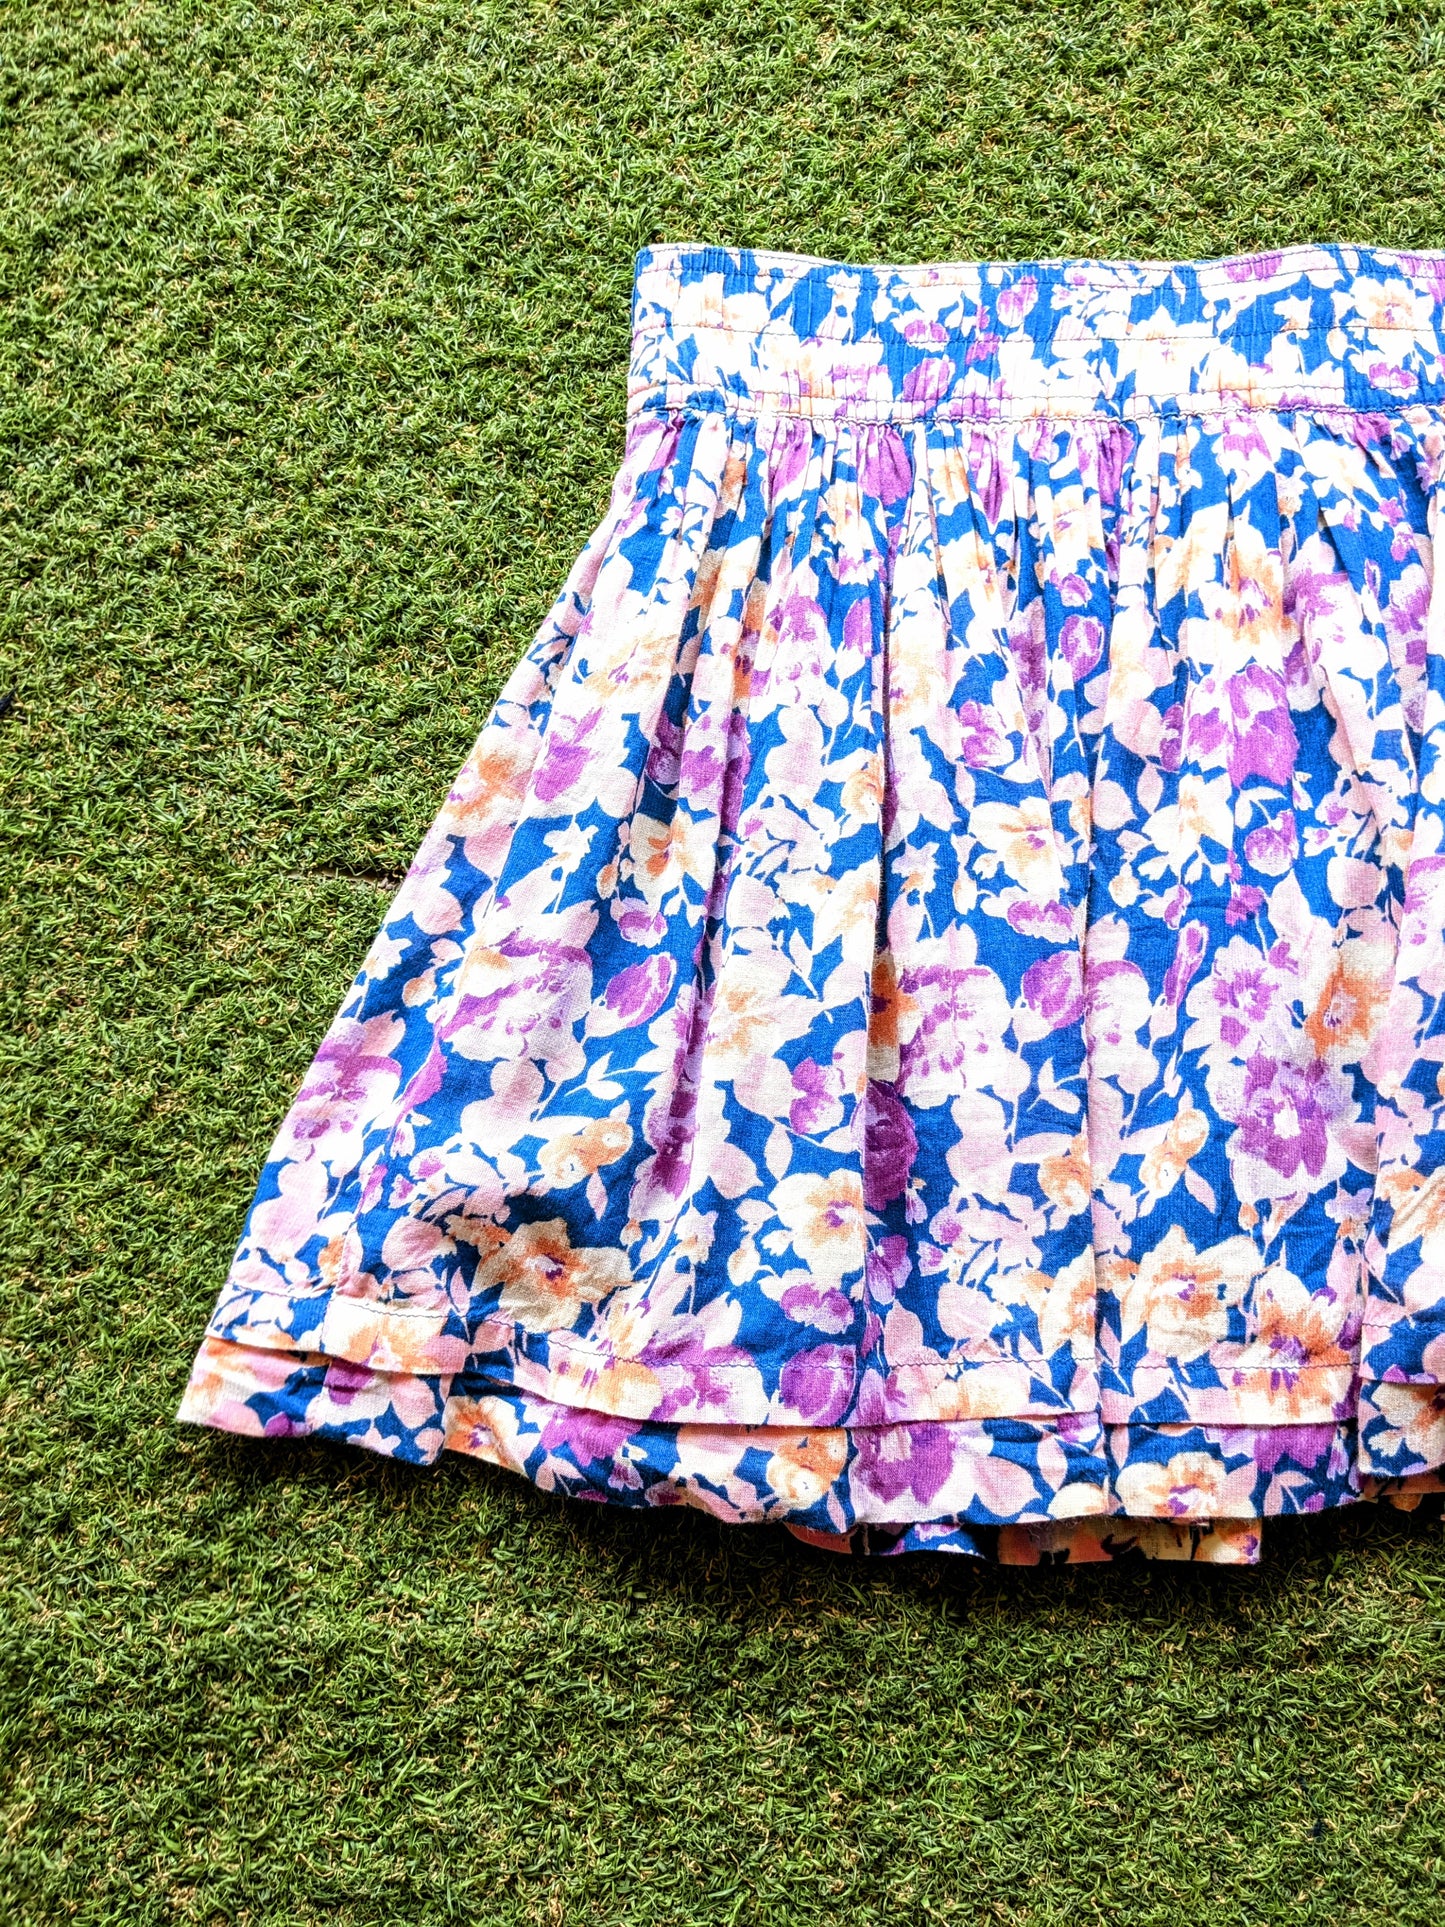 Forever 21 Floral Print Skirt